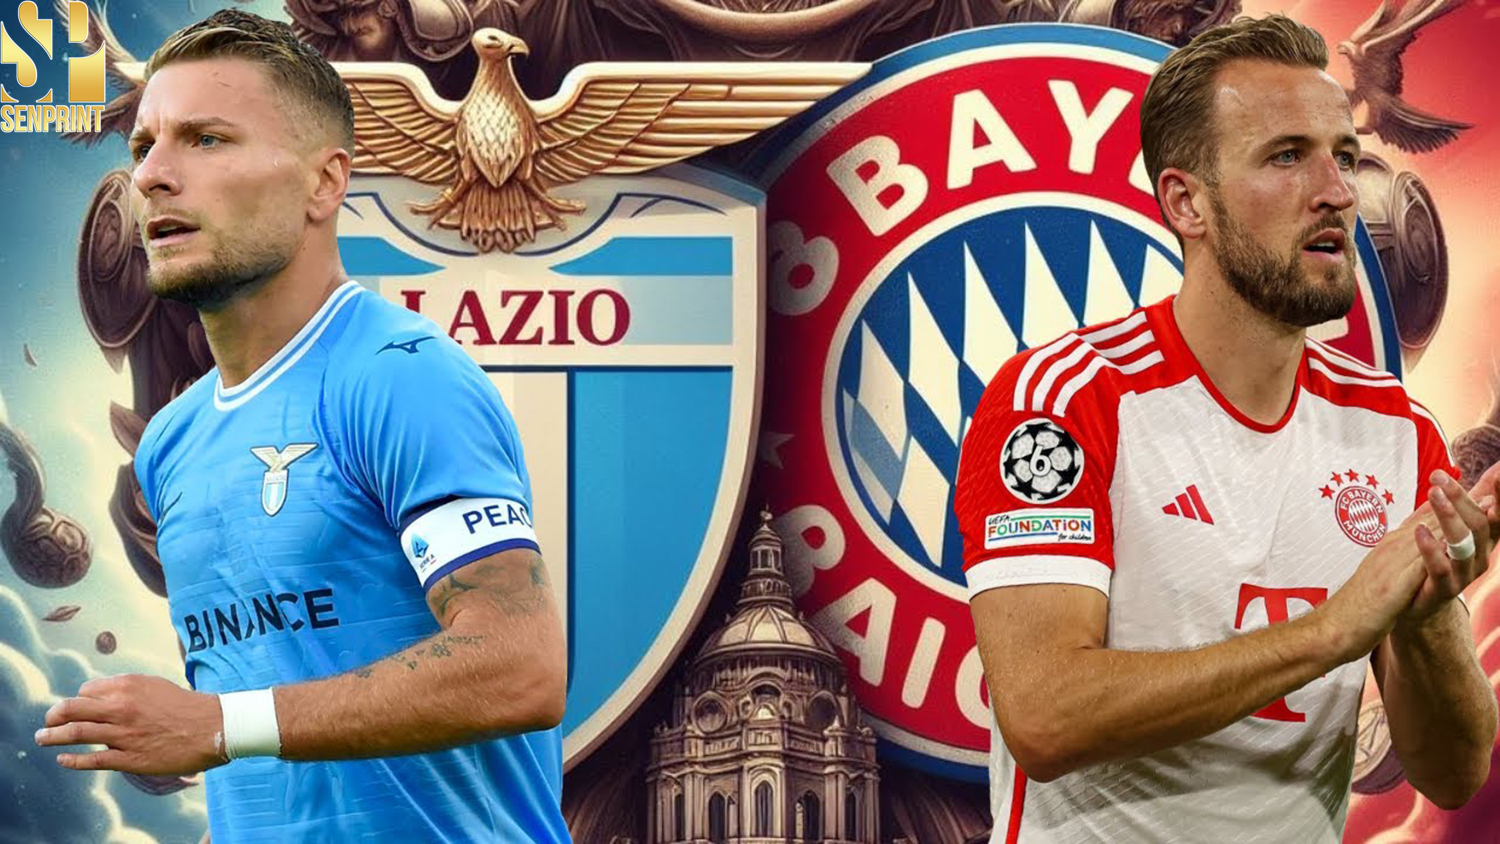 The Showdown at Allianz Arena FC Bayern München vs. Lazio Preview